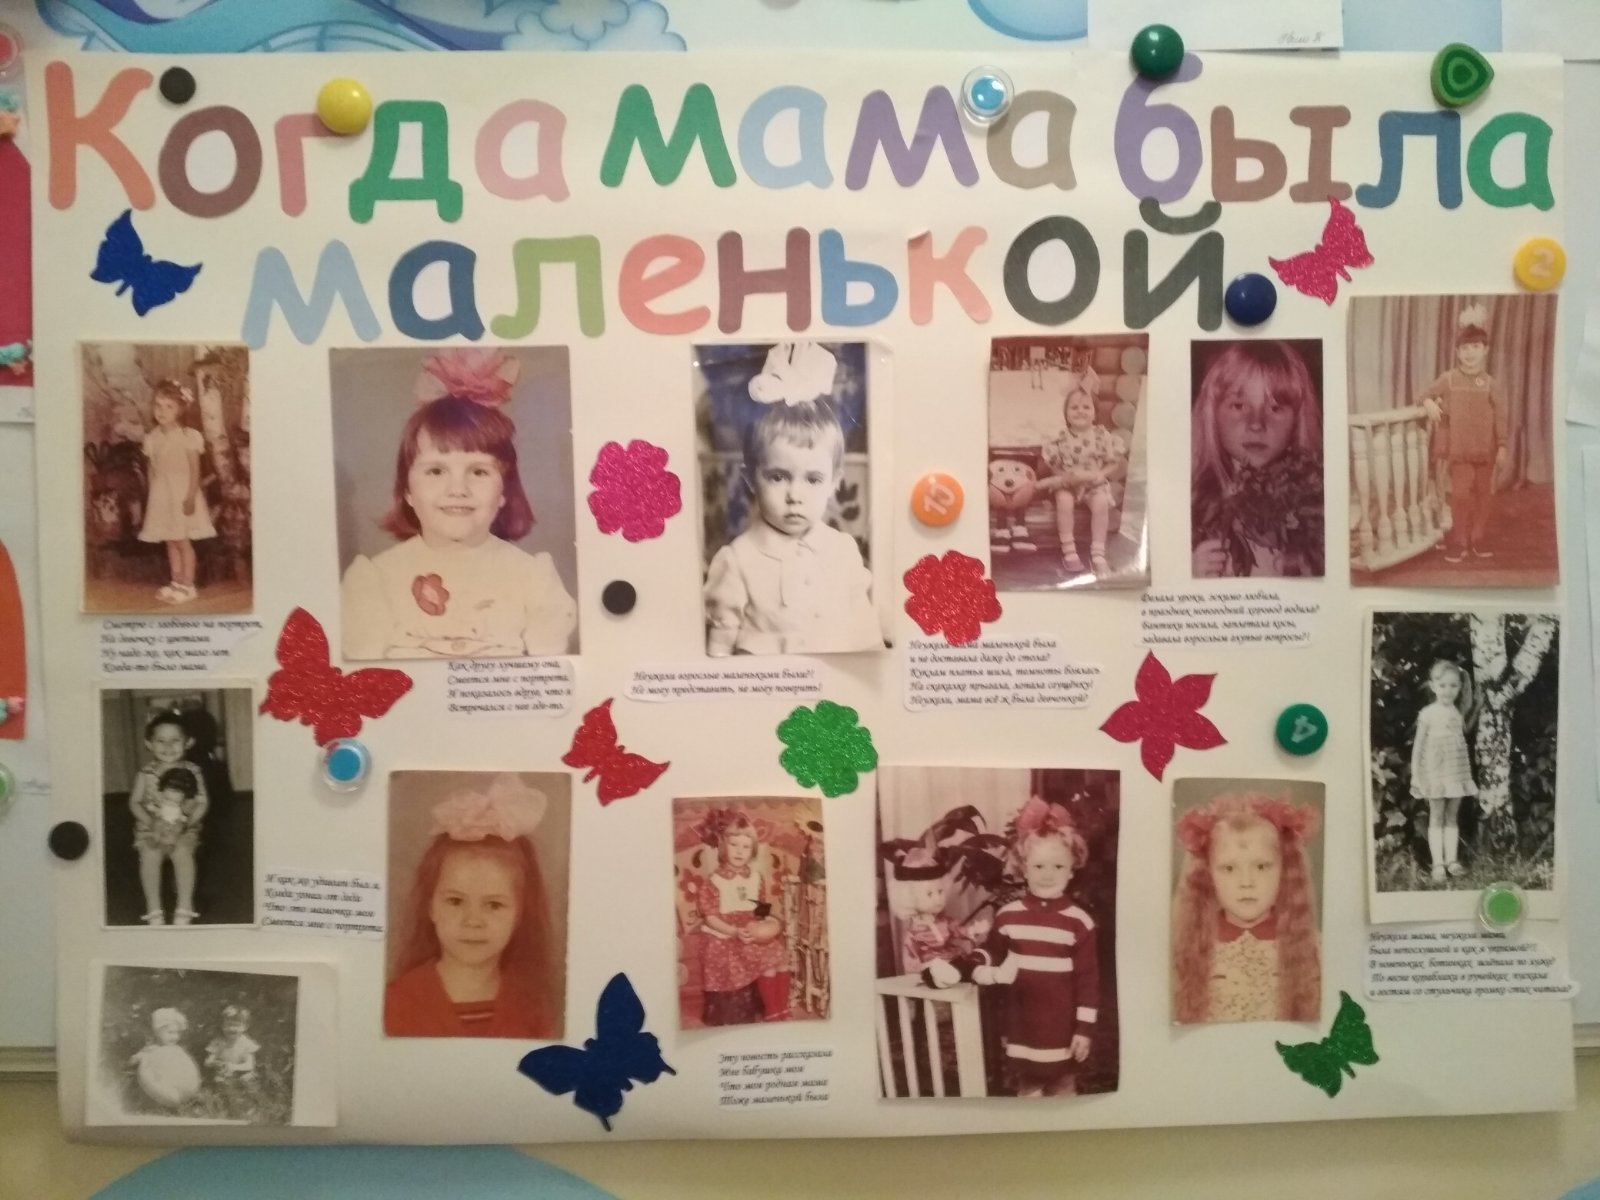 Мамы тоже были детьми. Плакат ко Дню матери в детском саду. Стенгазета ко Дню матери. Стенгазета ко Дню матери в детском саду. Плакат ко Дню матери в ДОУ.